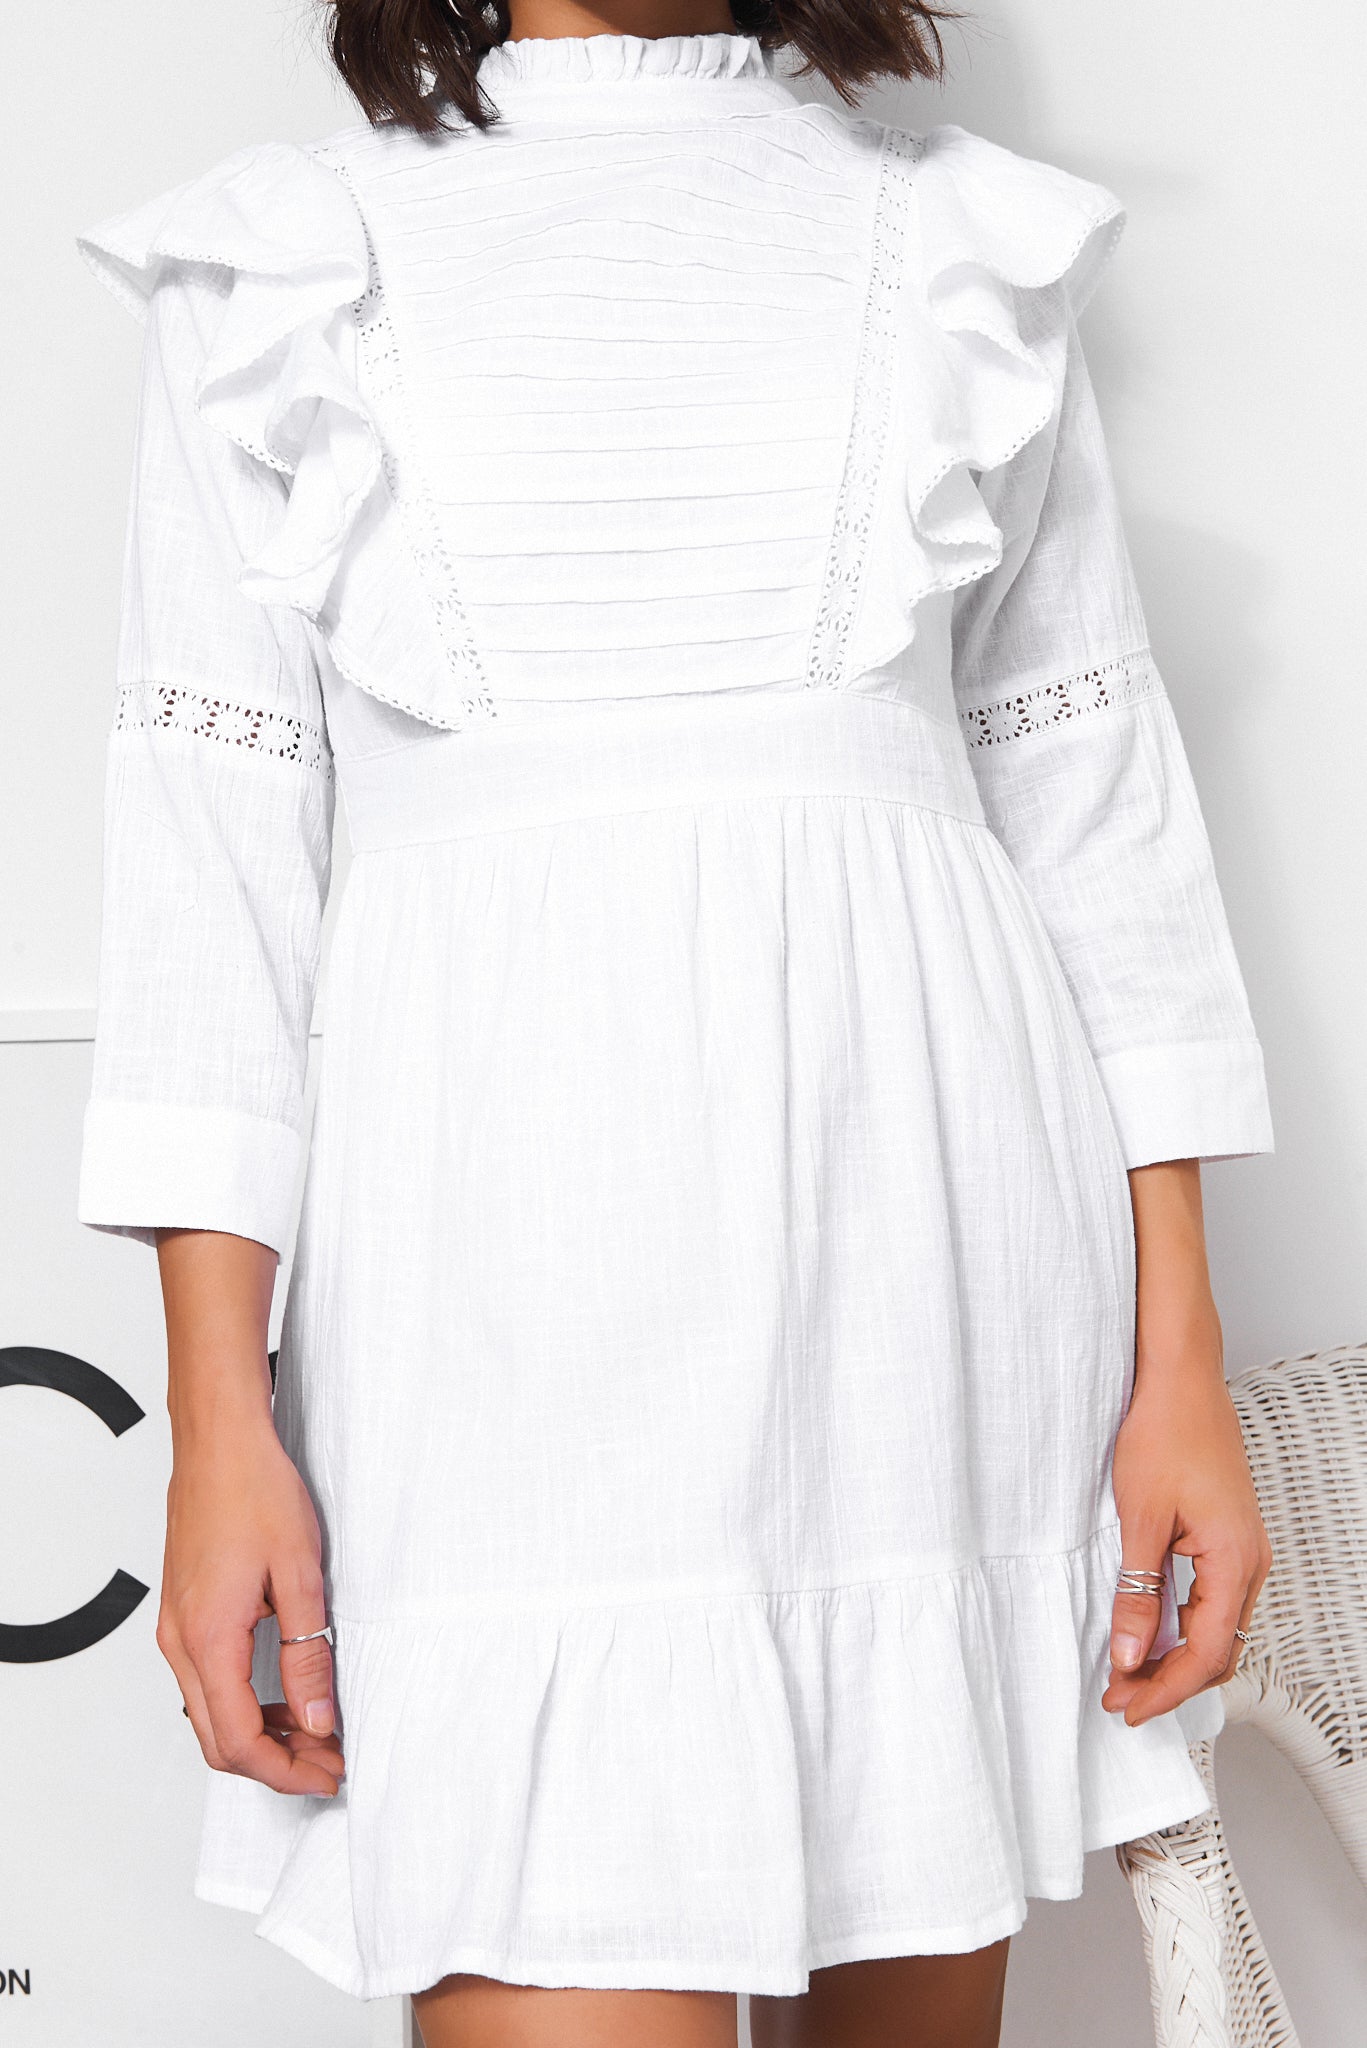 Lira White Prairie Dress